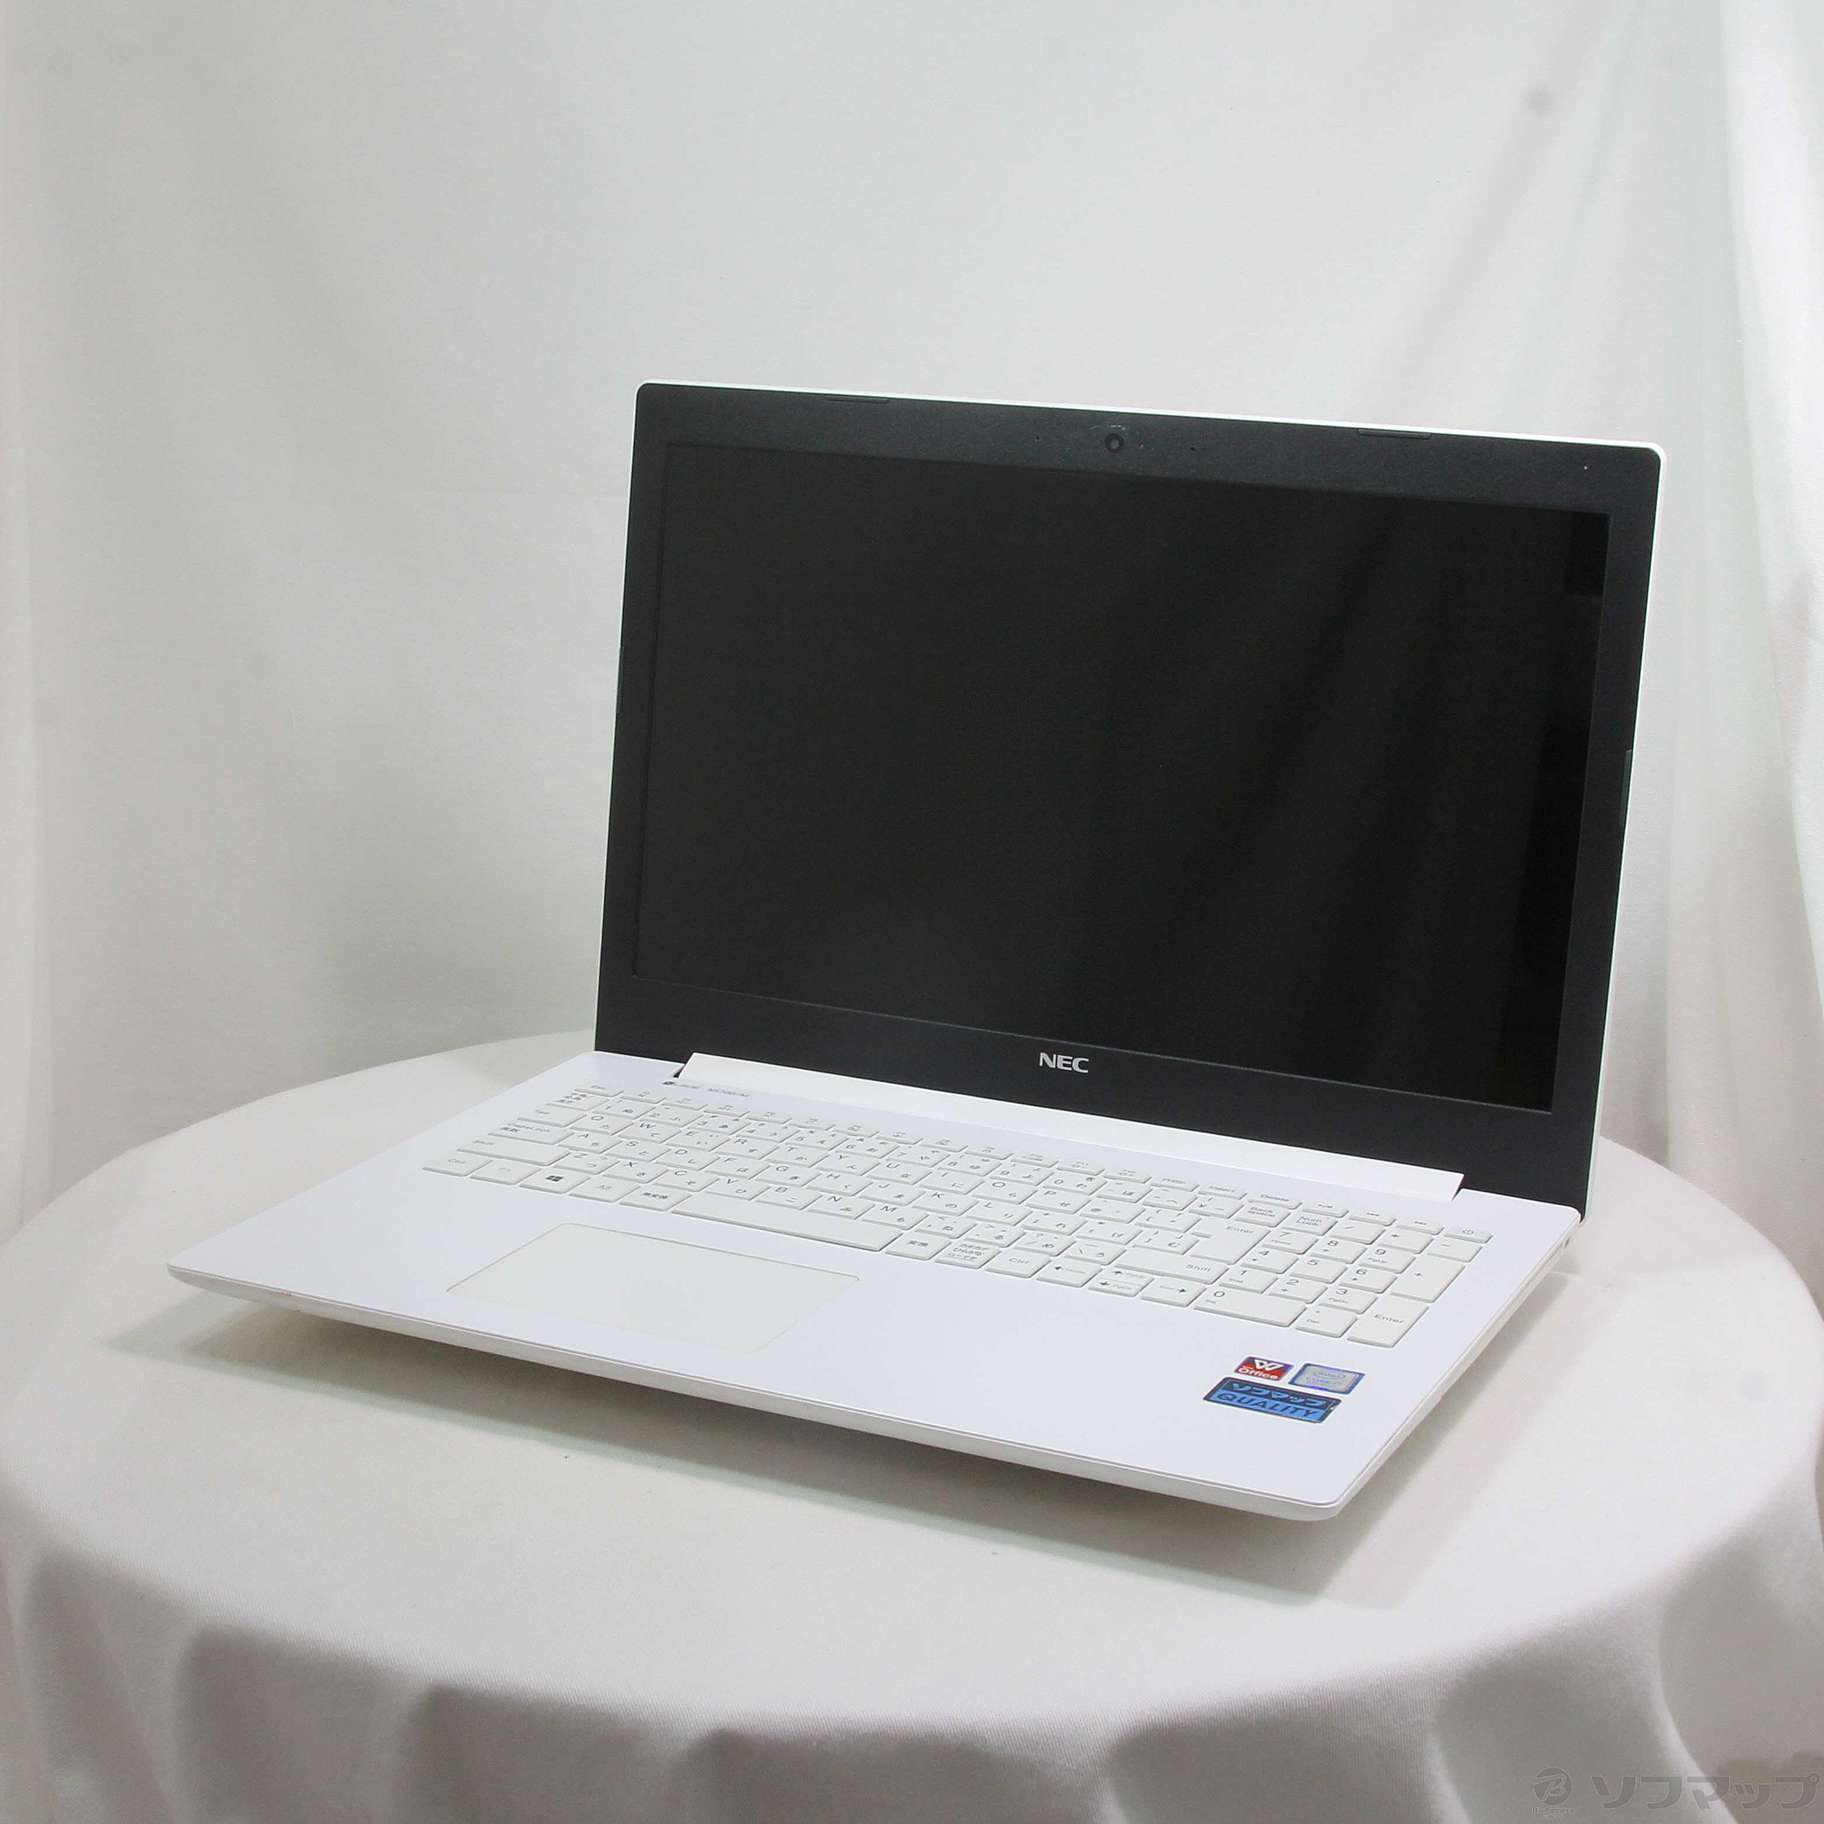 セール対象品 LaVie Note Standard NS700／MAW PC-NS700MAW カームホワイト 〔Windows 10〕